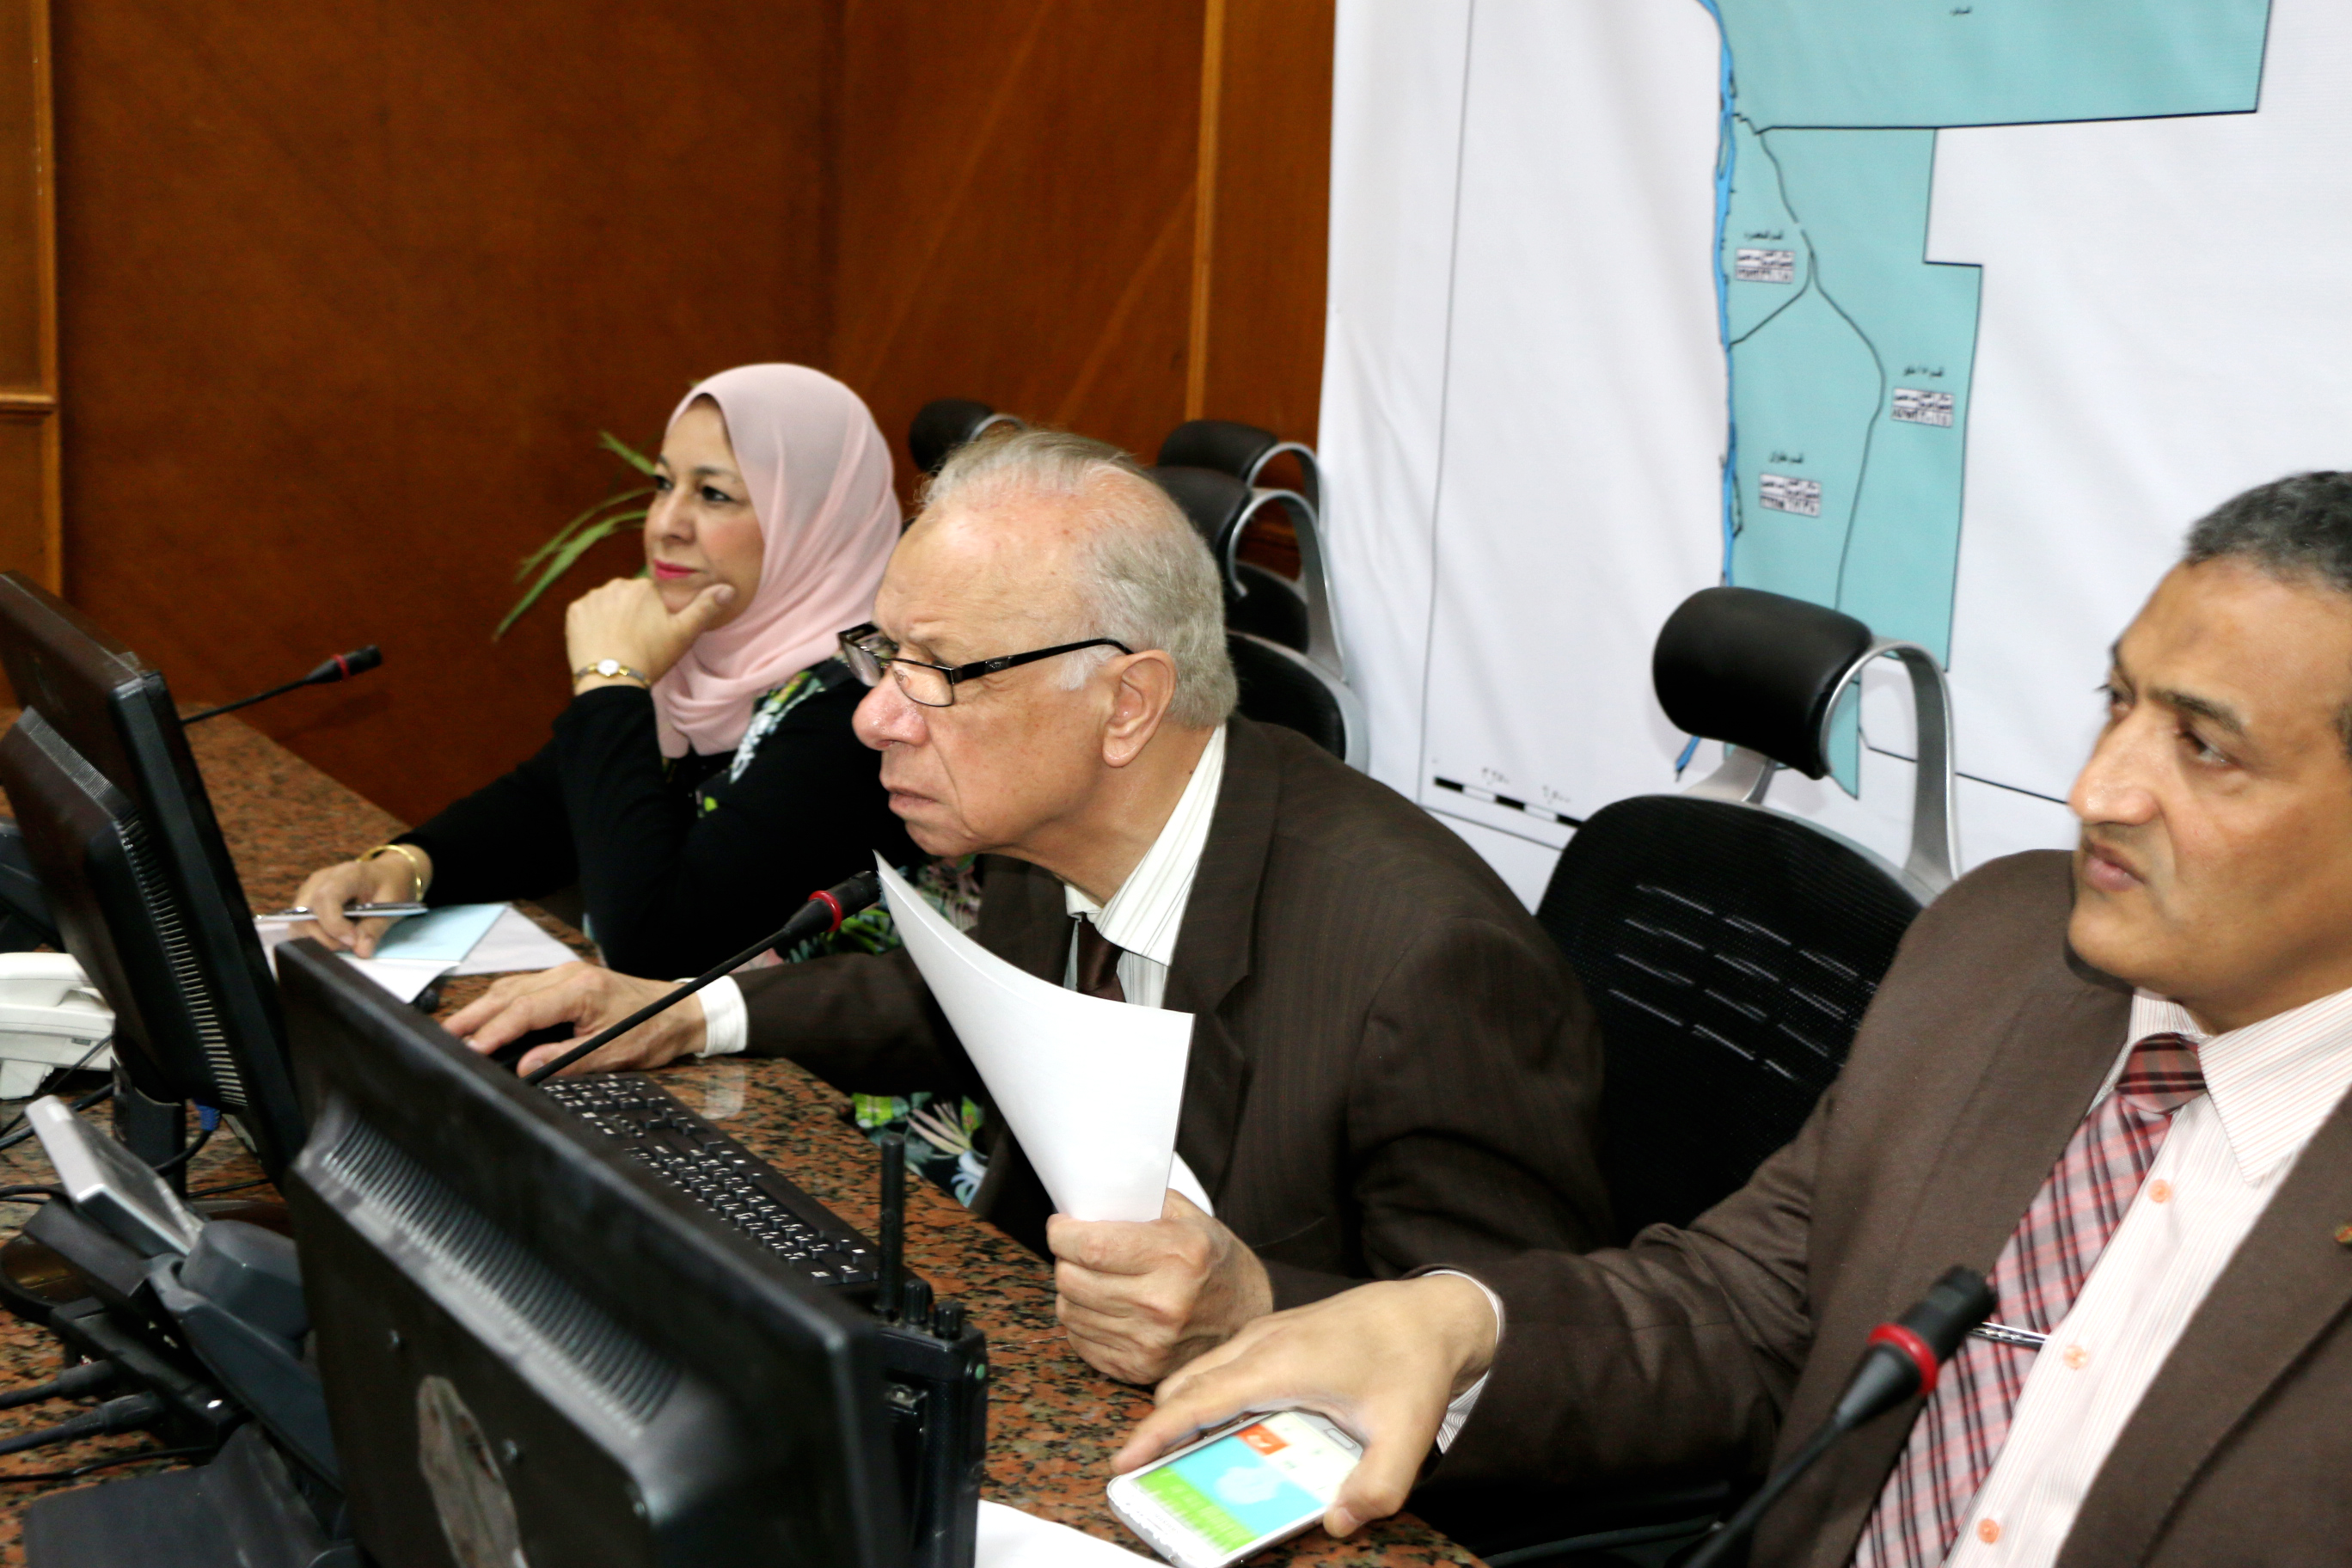 محافظ القاهرة يتابع لجان الانتخابات الرئاسية بالفيديو كونفرانس  (4)